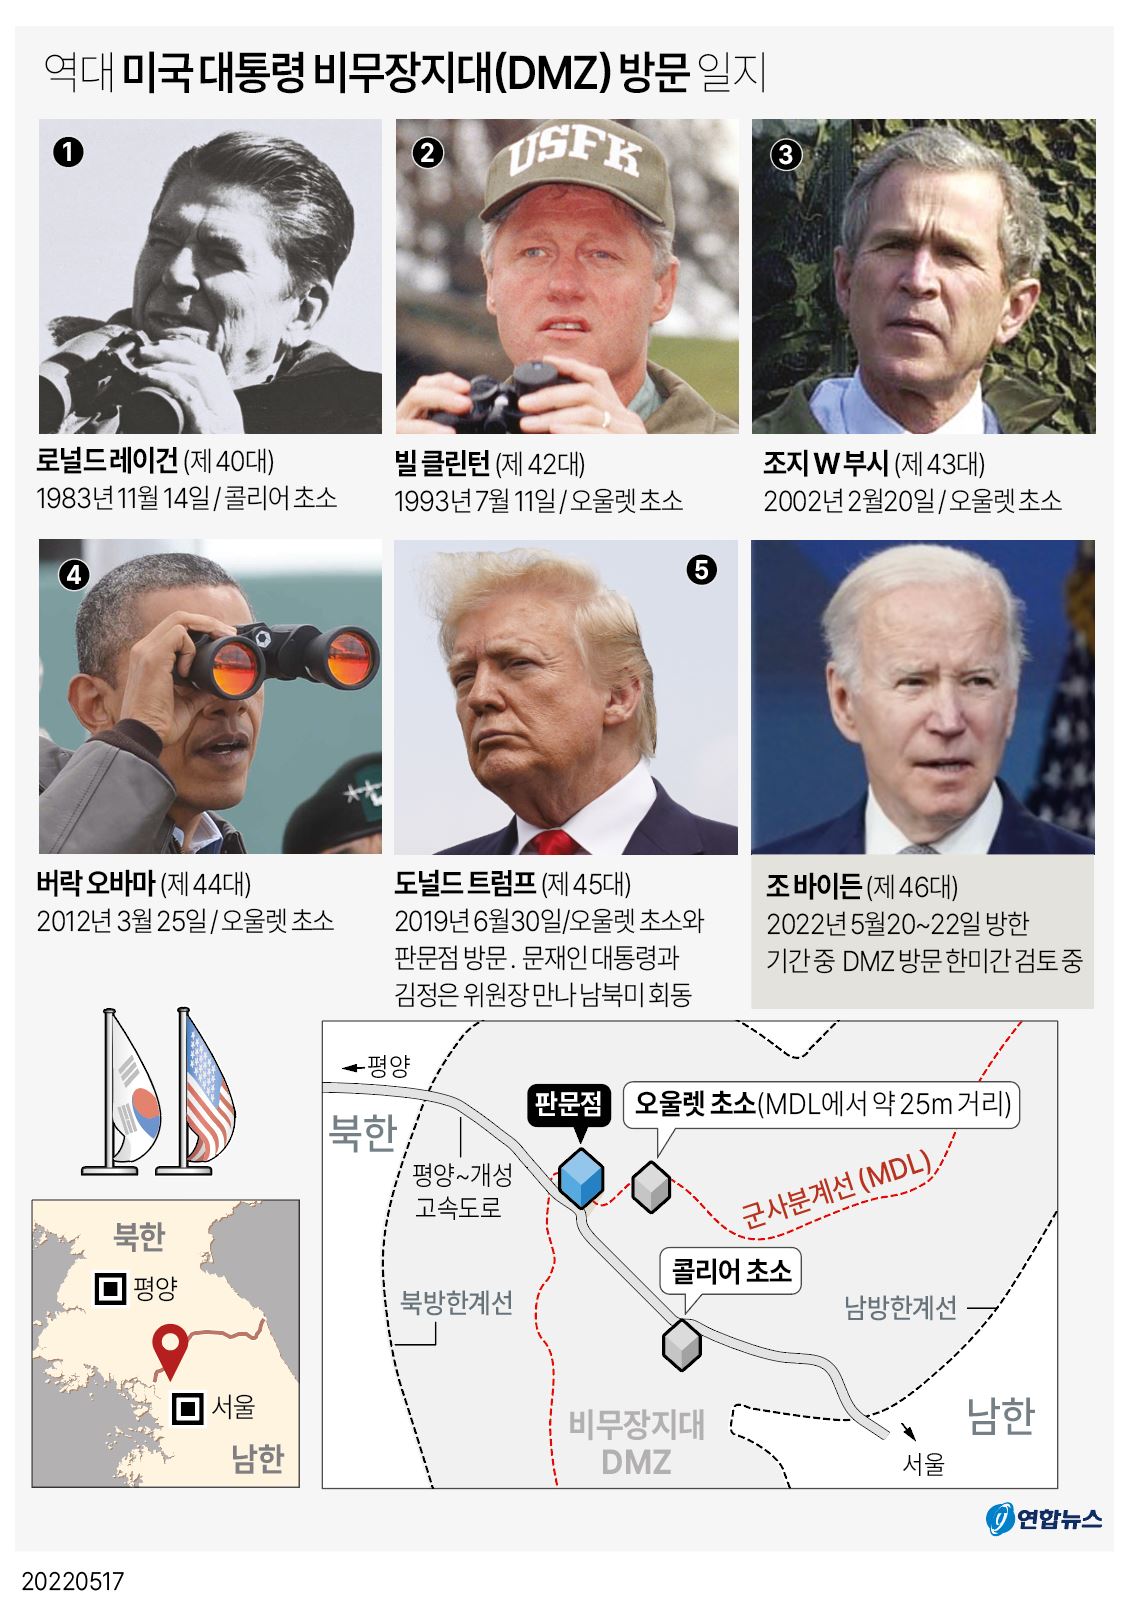 [그래픽] 역대 미국 대통령 DMZ 방문 일지